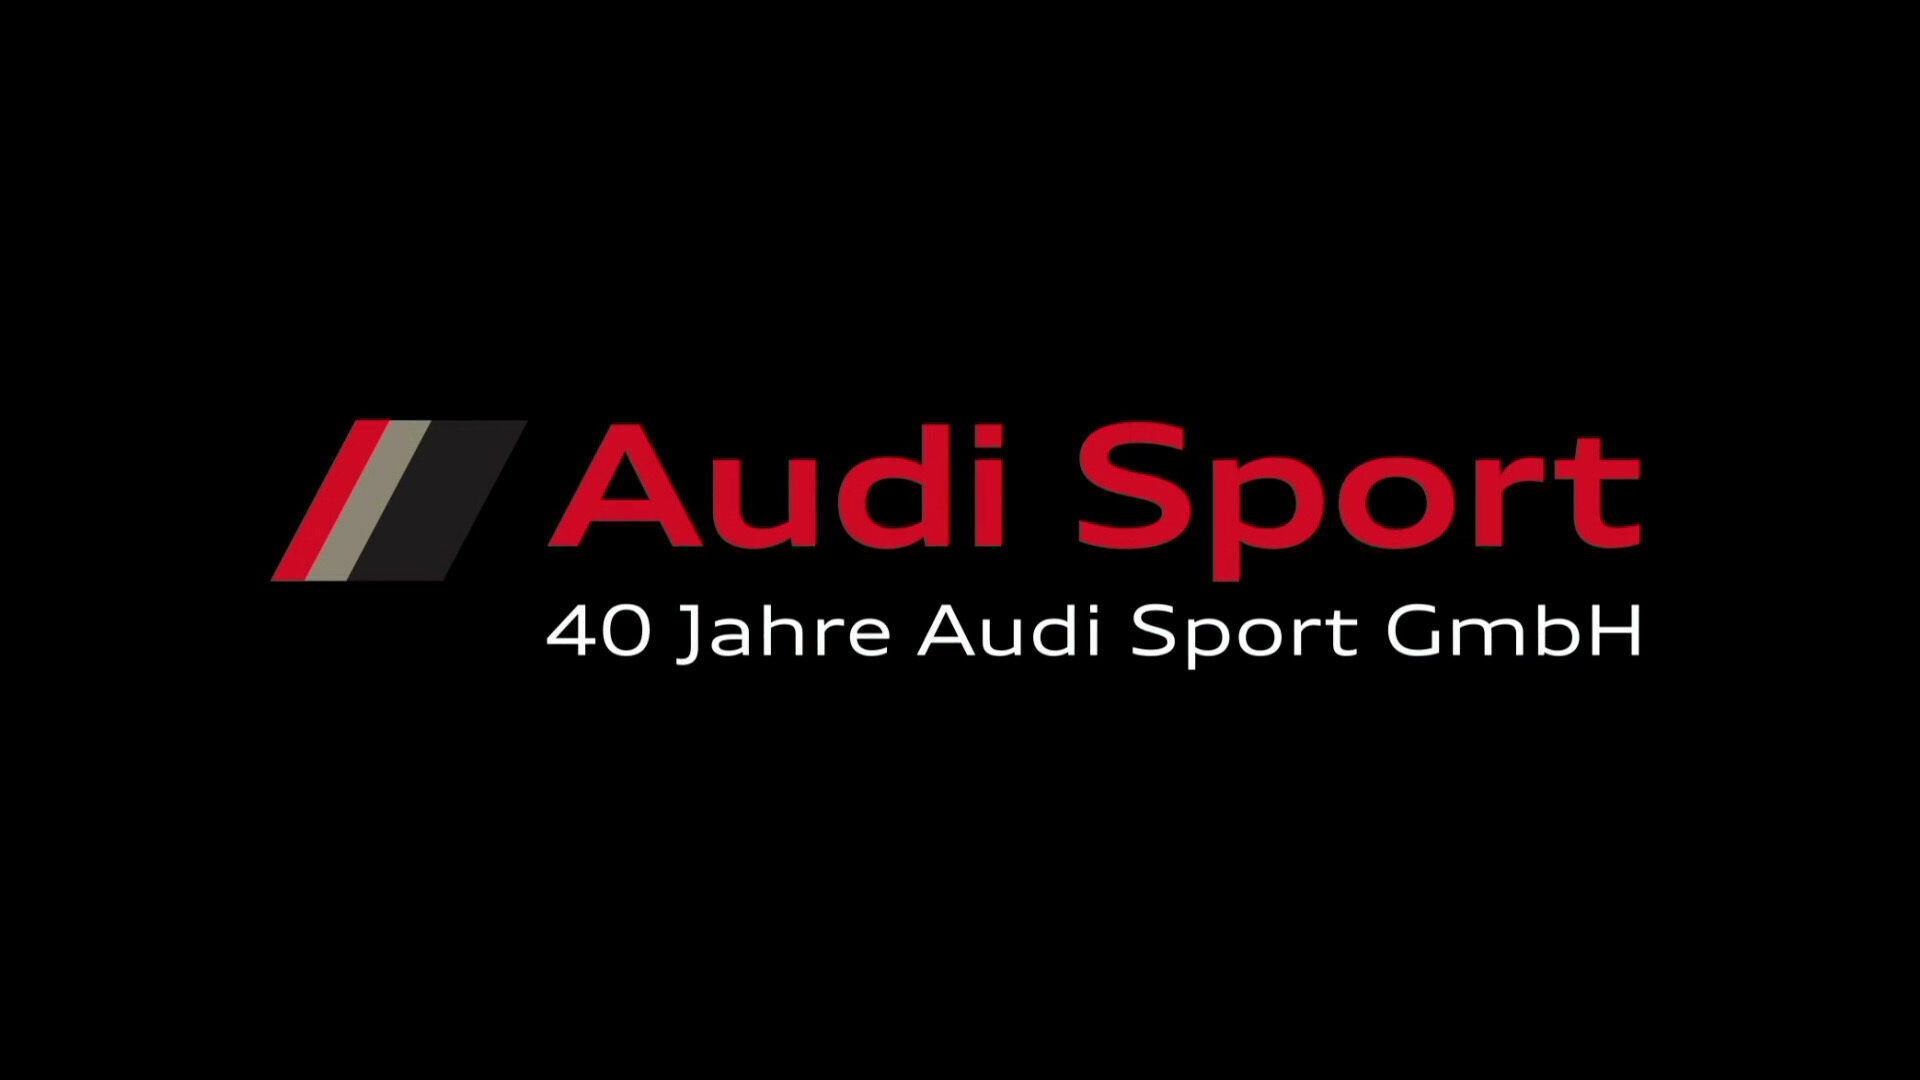 40 Jahre Audi Sport GmbH – Teaser